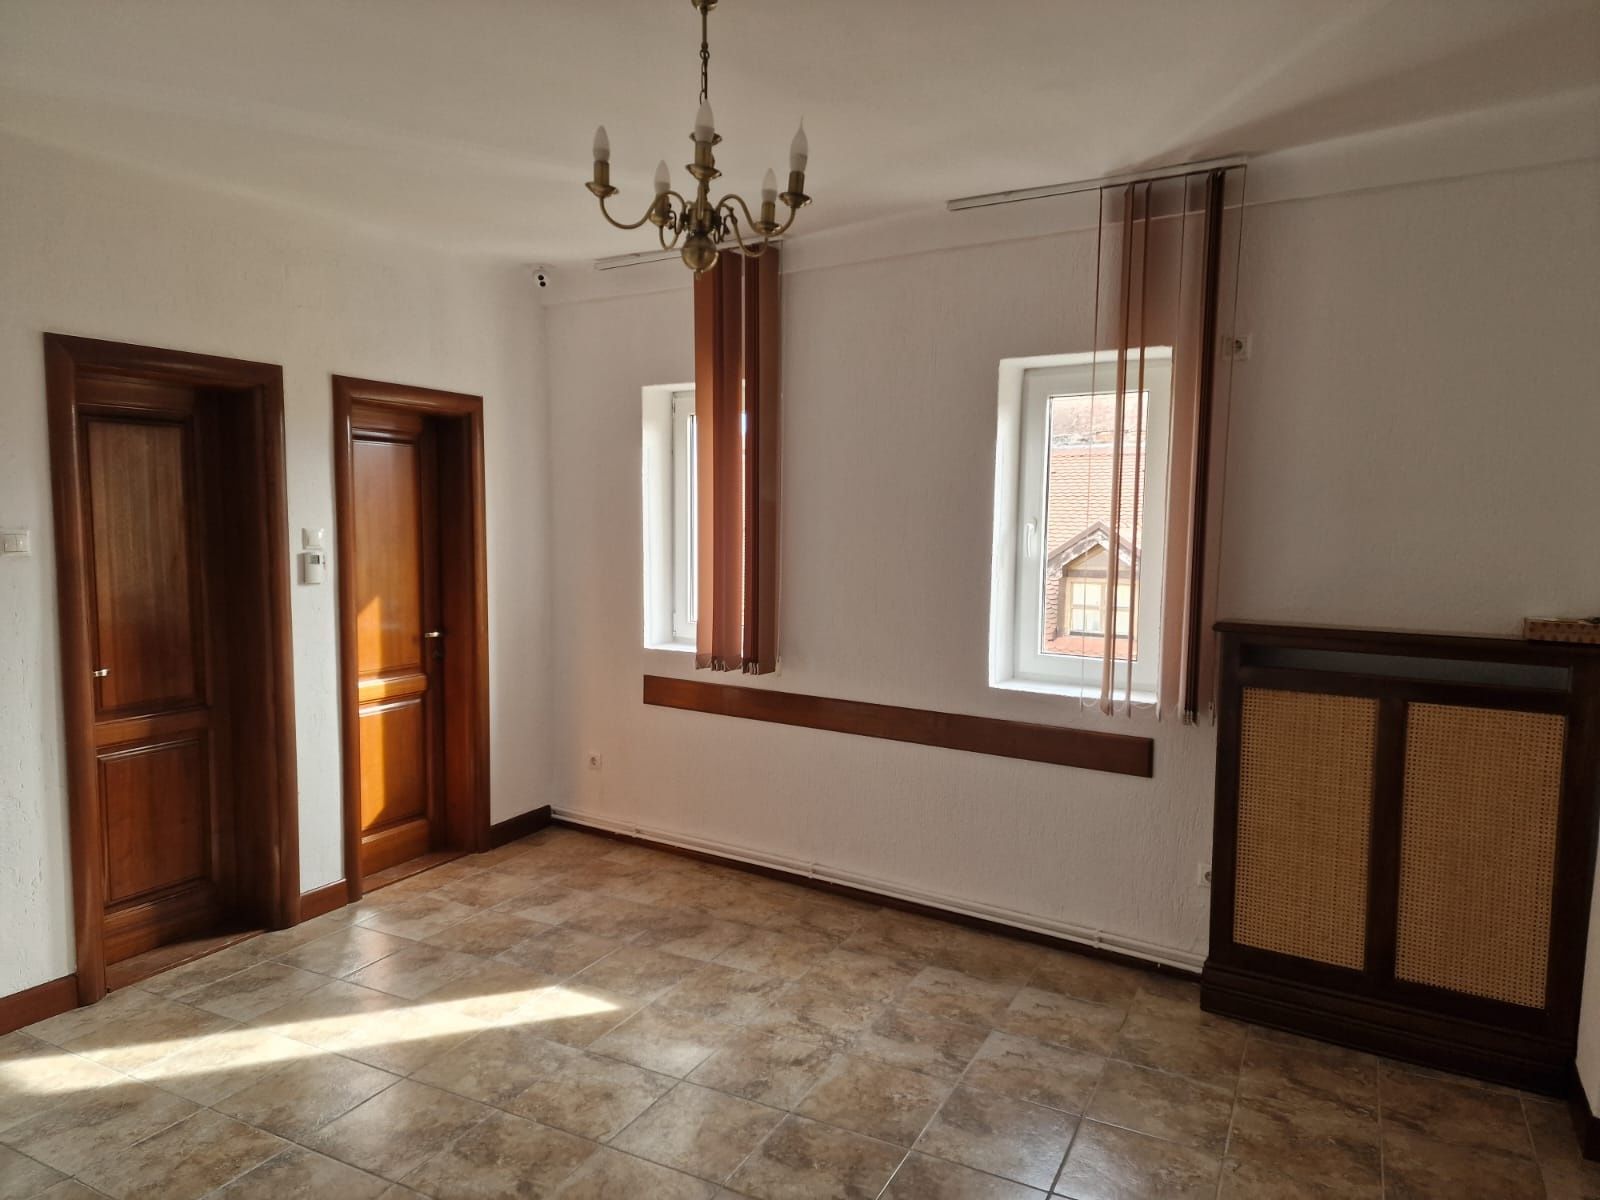 Apartament cu 3 camere in Sibiu,central,zona Bdul Victoriei.